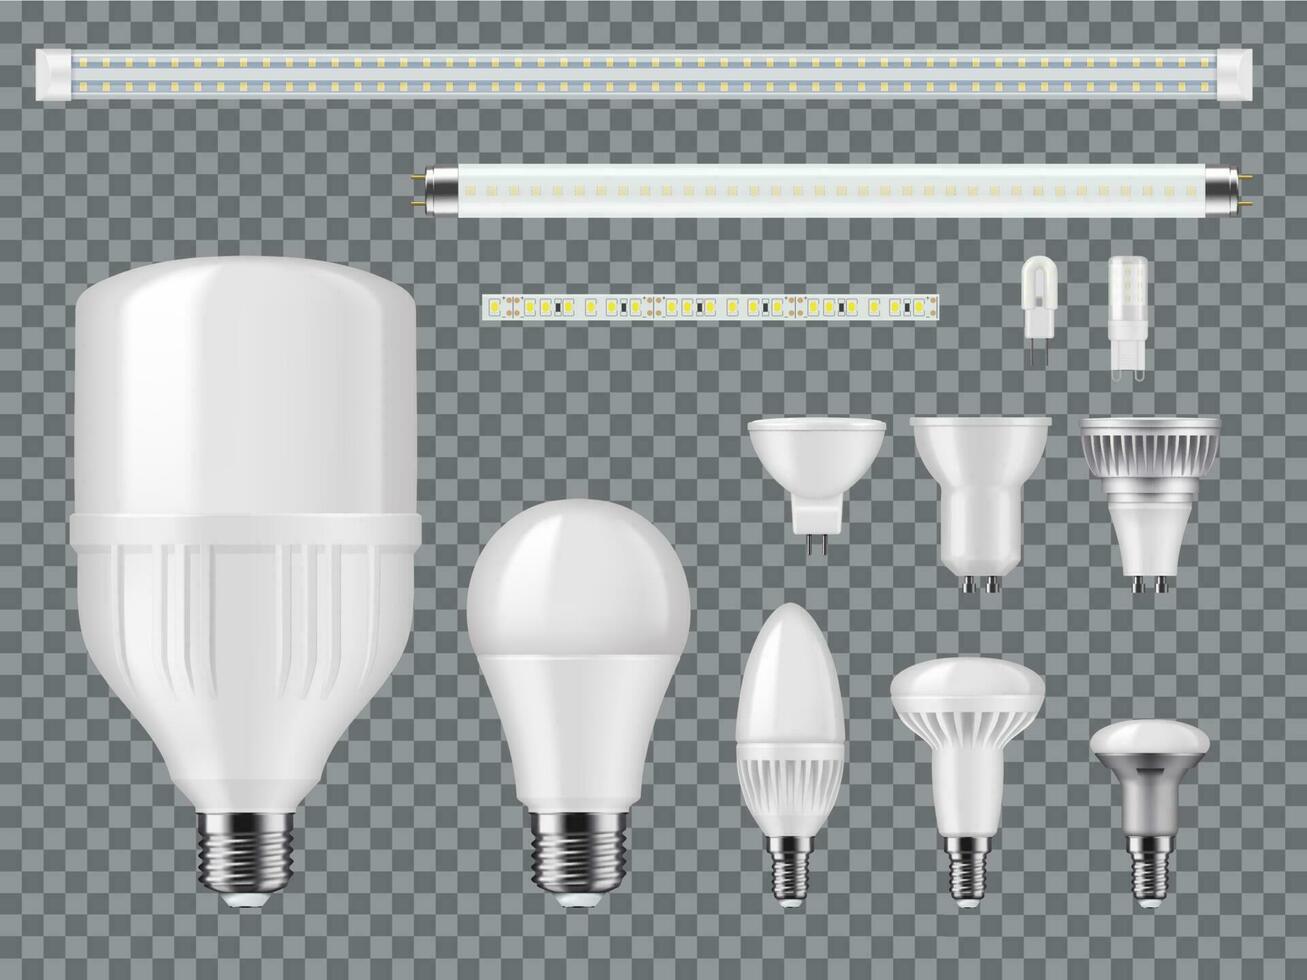 LED Glühbirnen, Streifen und linear Lampen Vektor Attrappe, Lehrmodell, Simulation